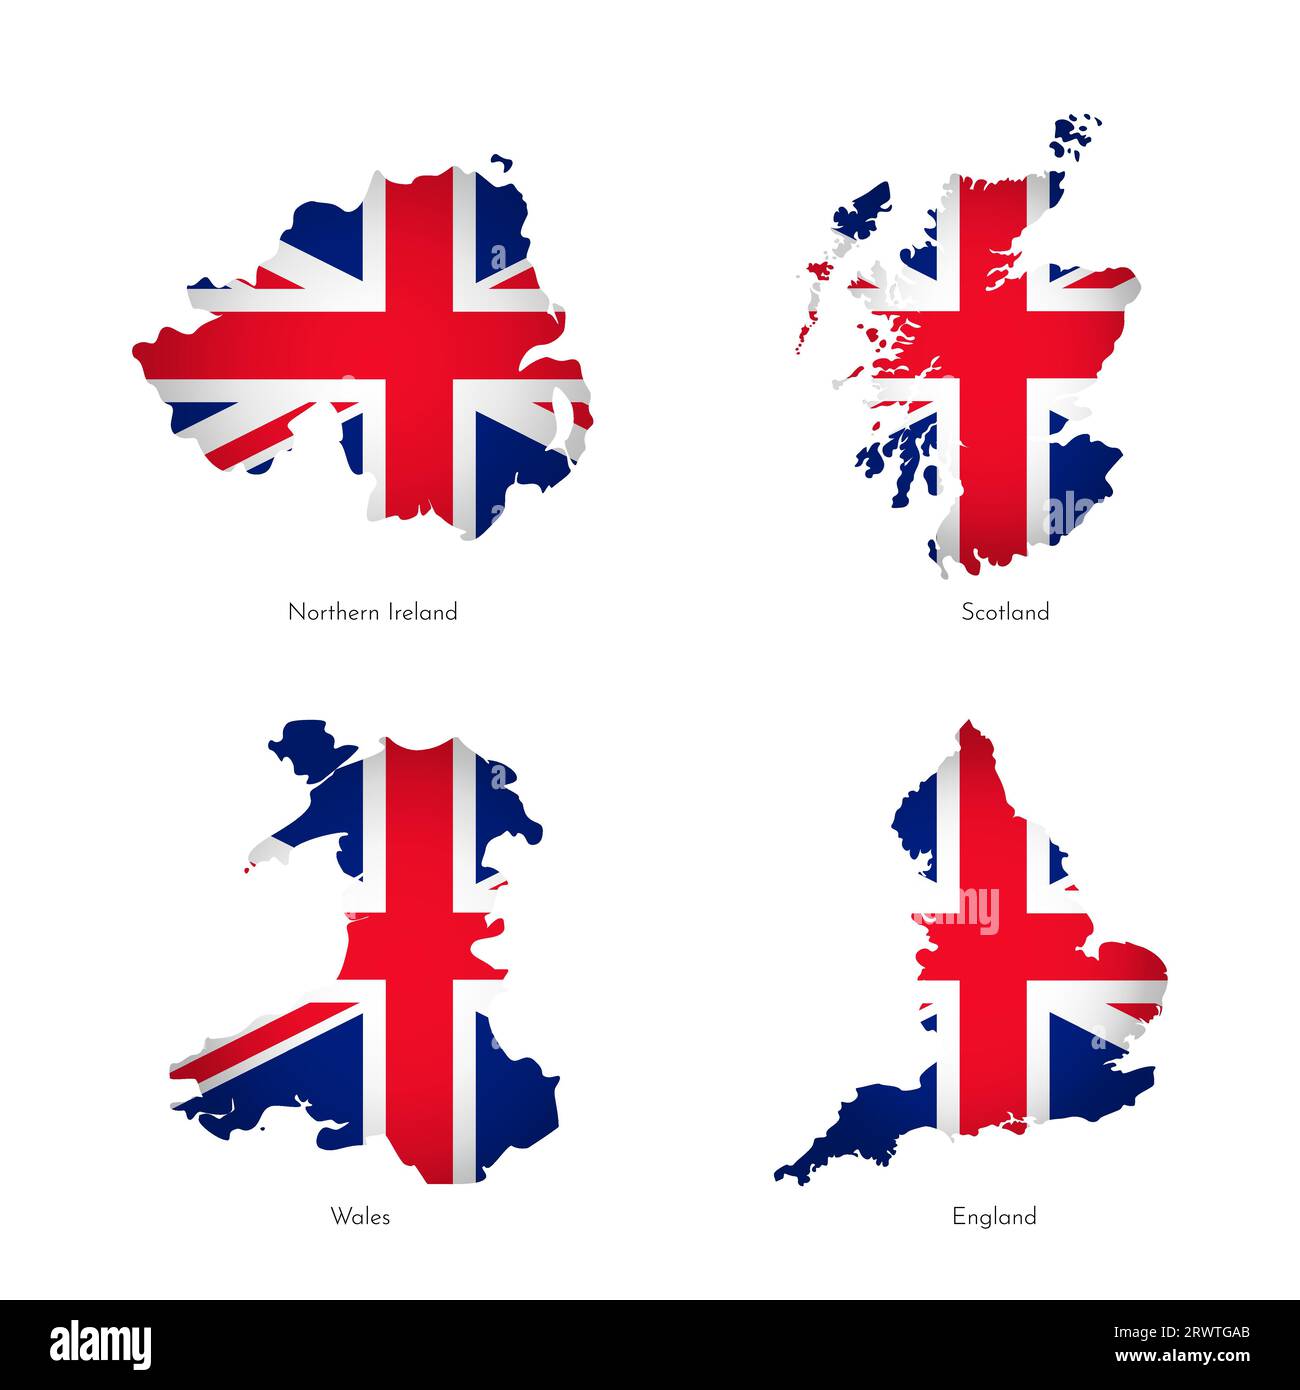 Illustrazioni vettoriali con mappe semplificate delle regioni del Regno Unito (Scozia, Inghilterra, Irlanda del Nord, Galles). Bandiera nazionale britannica con croce Illustrazione Vettoriale